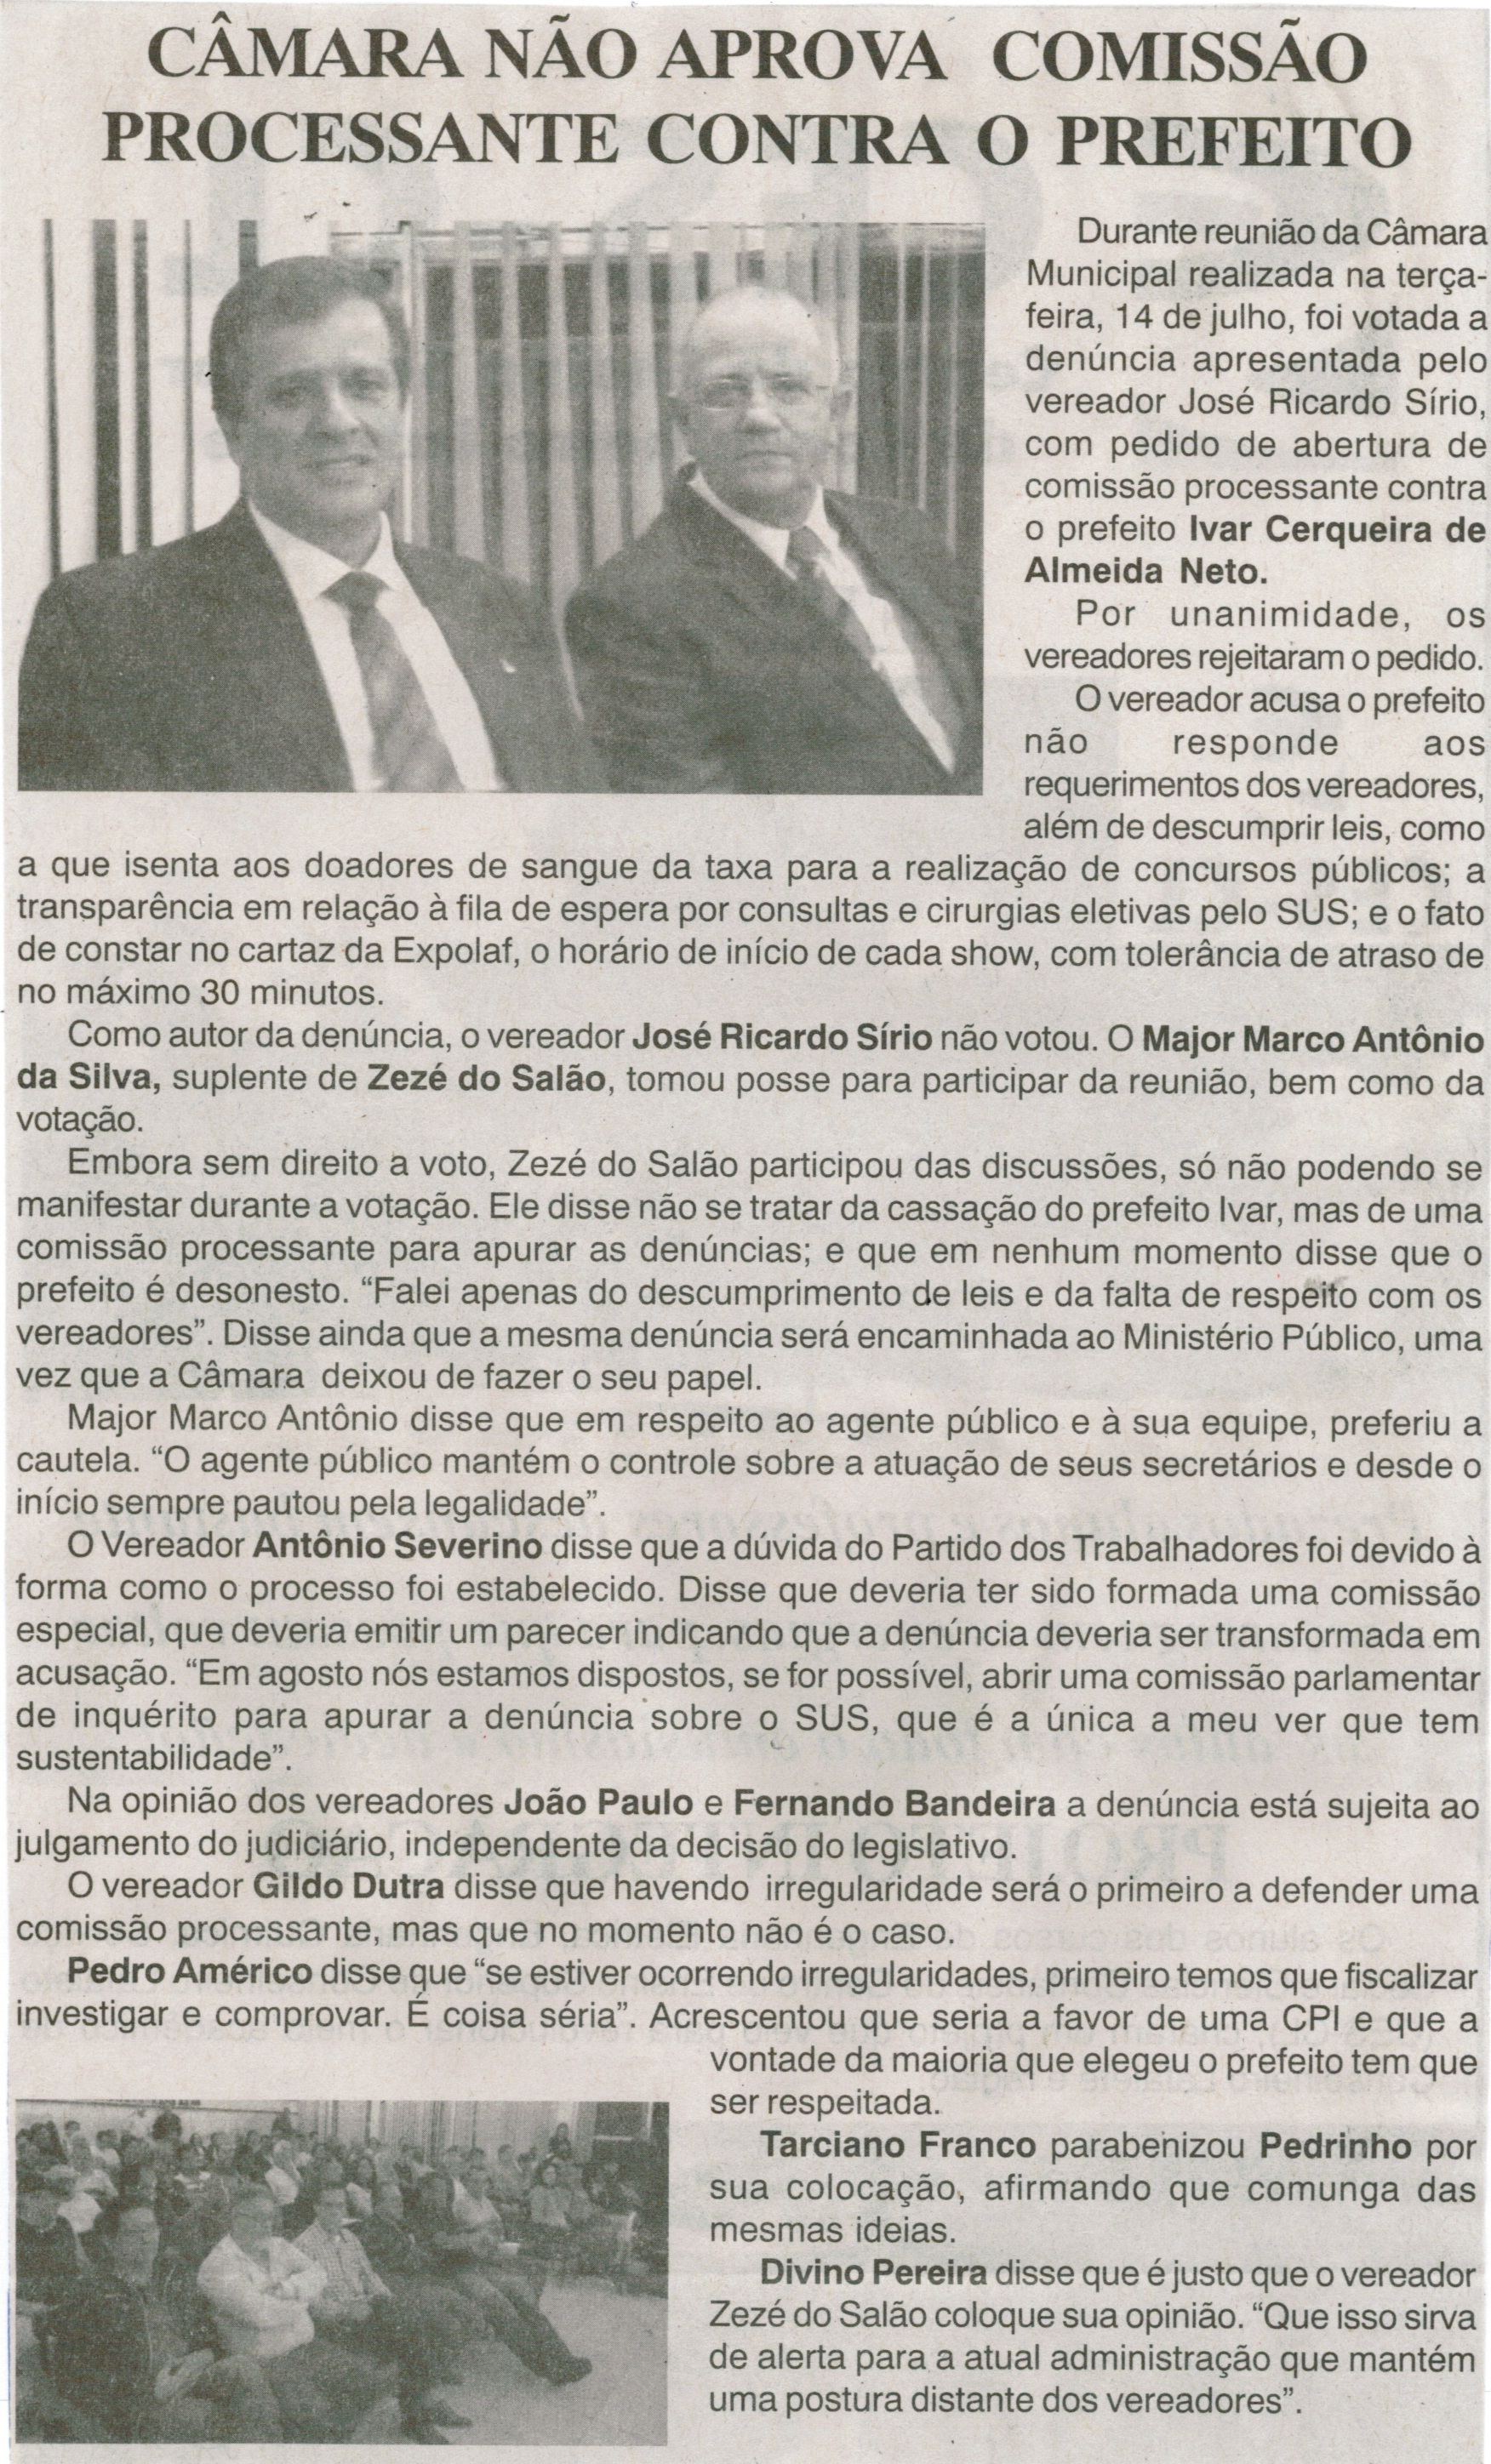 Câmara não aprova Comissão Processante contra o Prefeito. Jornal Nova Gazeta, Conselheiro Lafaiete, 24 jul. 2015, p.4.